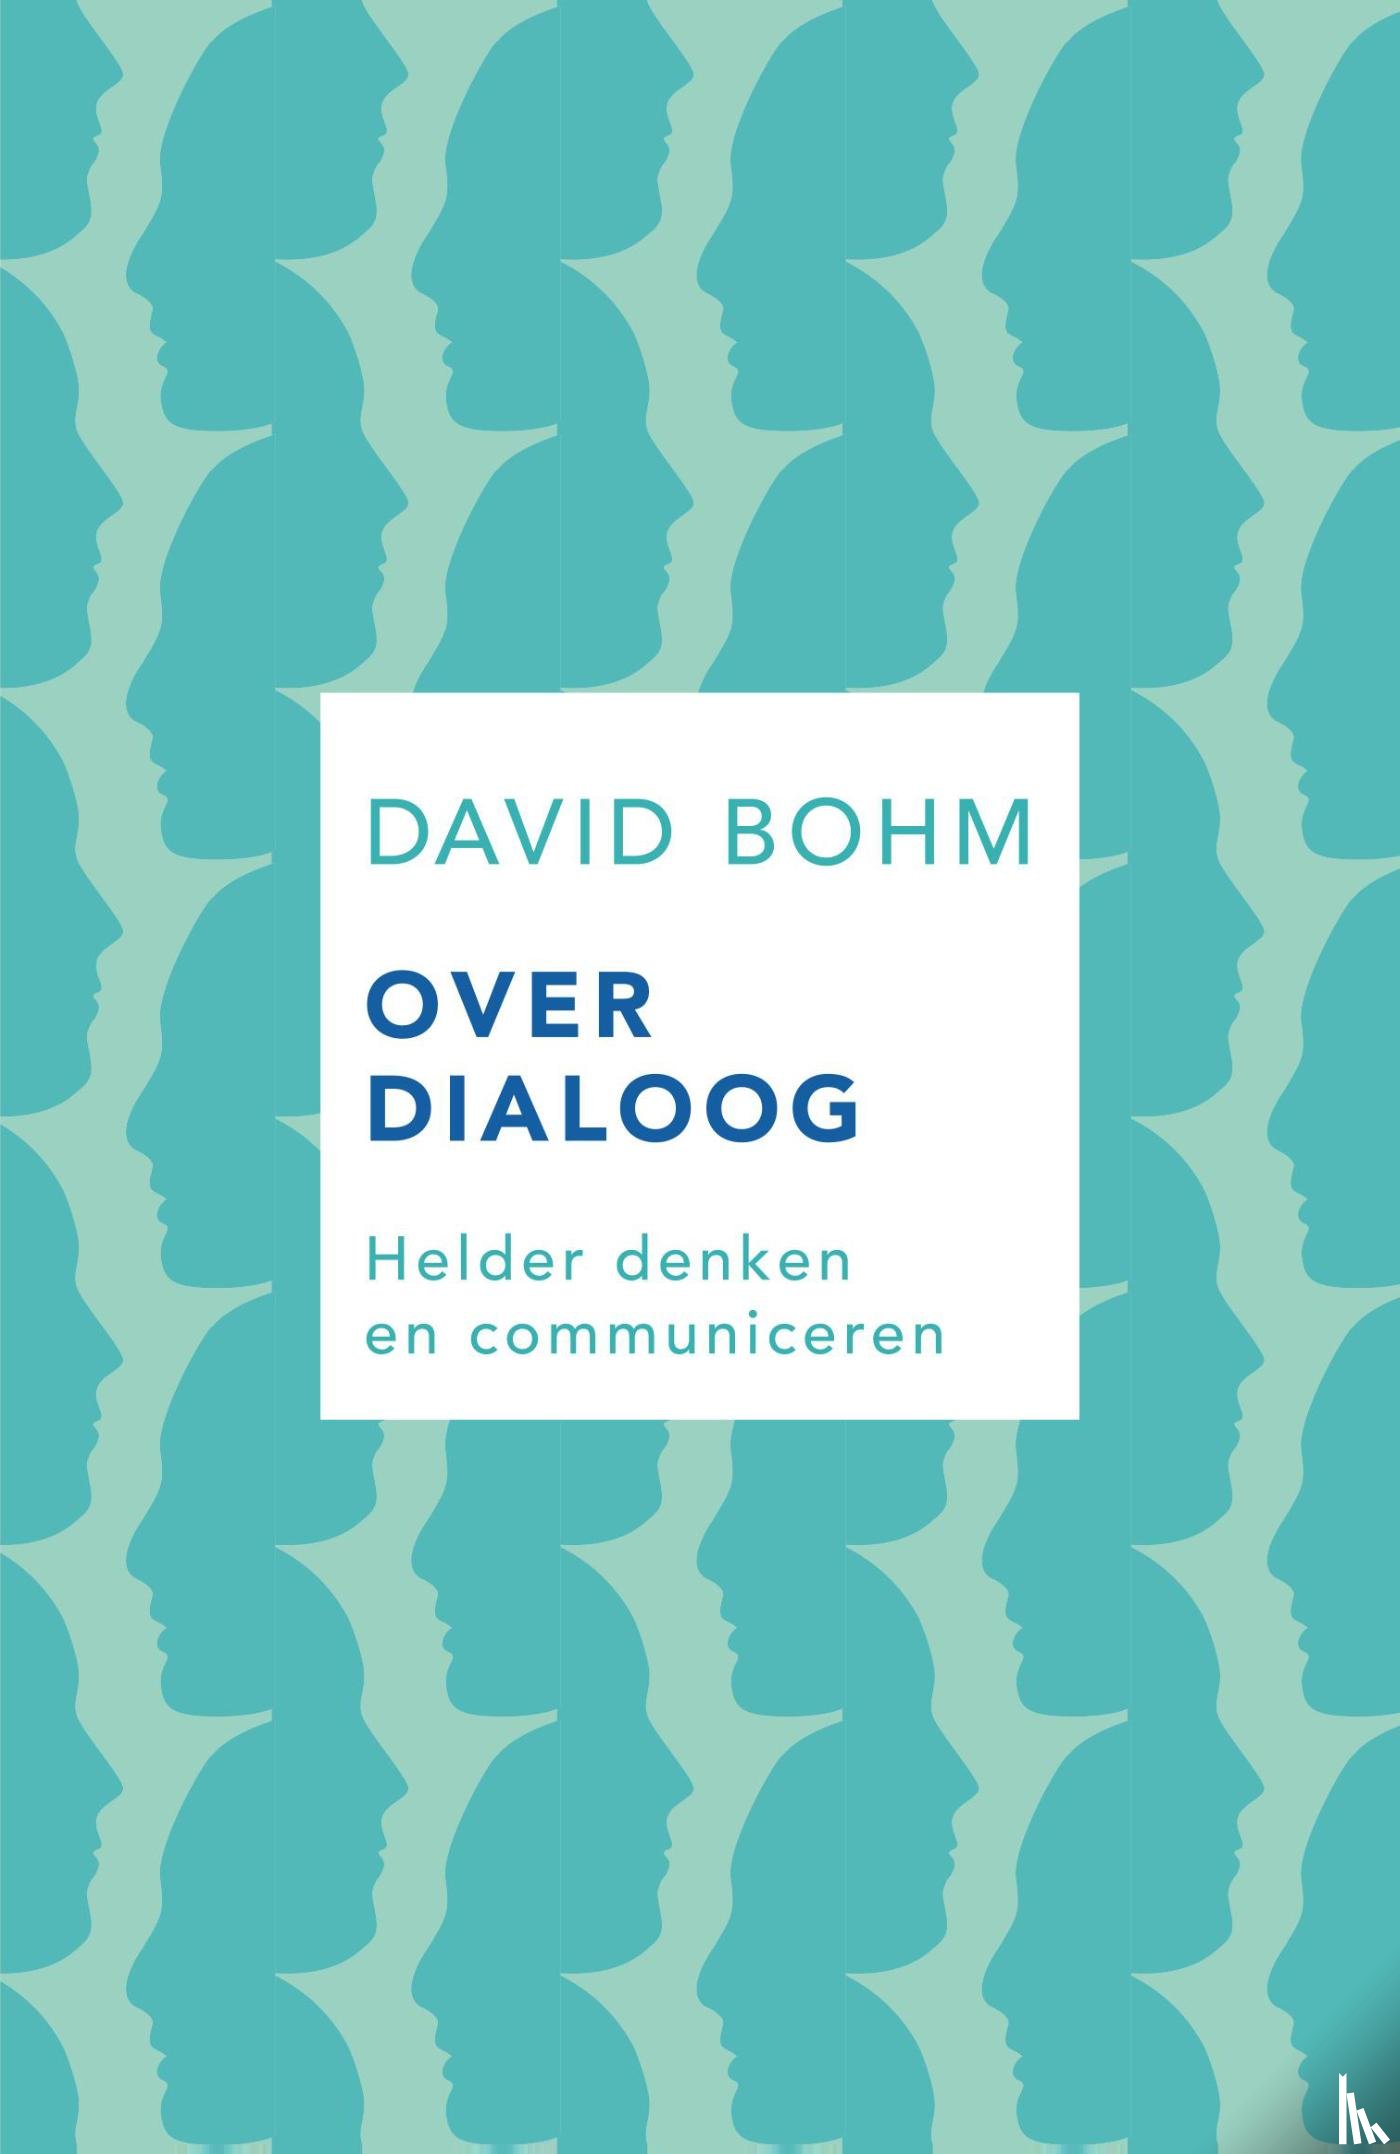 Bohm, David - Over dialoog